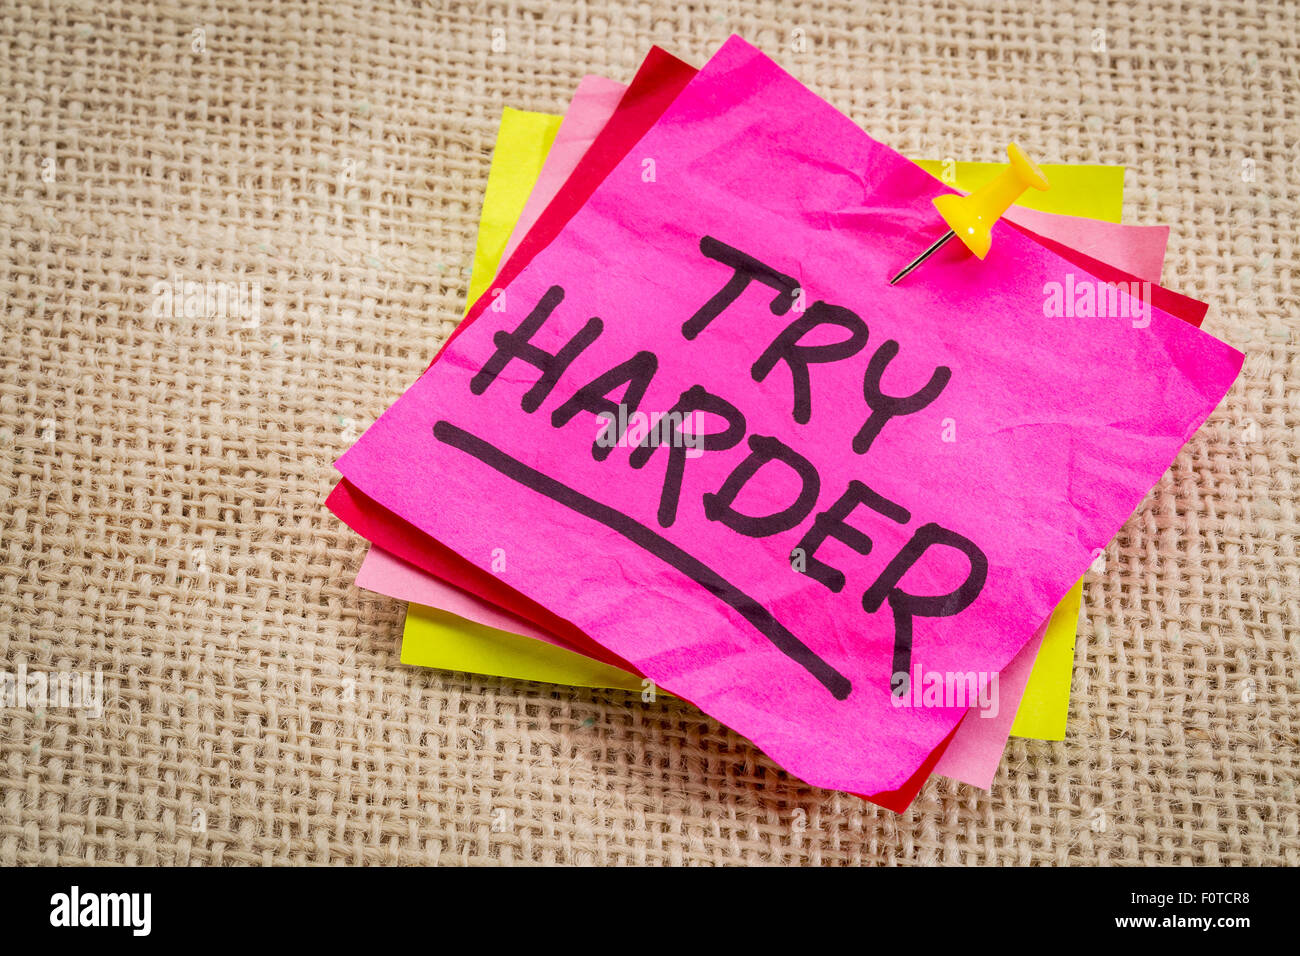 anstrengen Sie - Motivation Worte auf einem lila Zettel gegen Sackleinen Leinwand Stockfoto